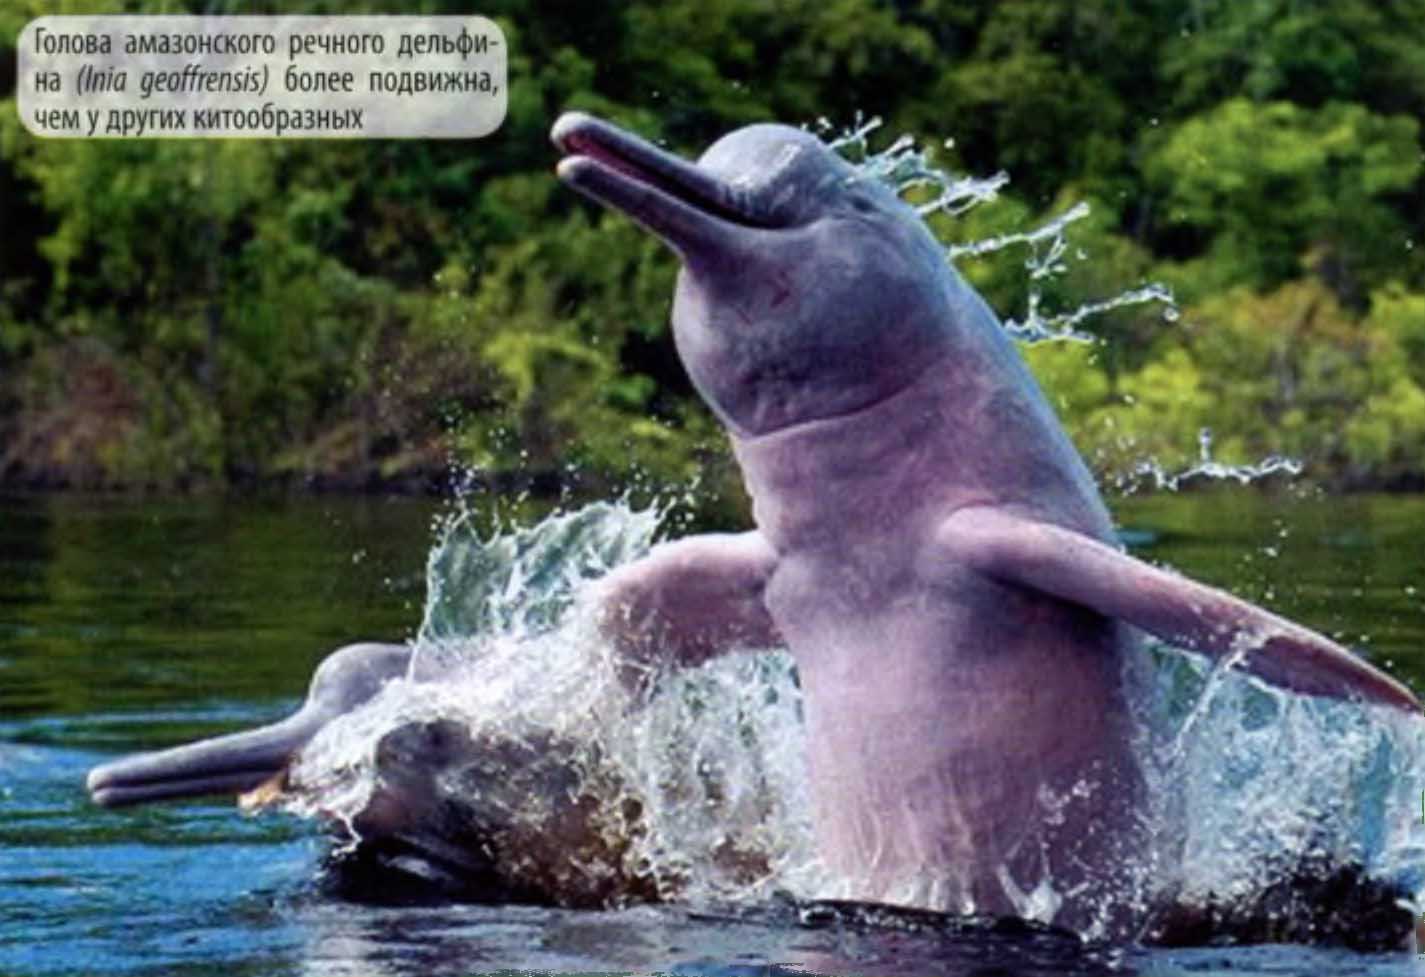 Голова амазонского речного дельфина (Inia geoffrensts) более подвижна, чем у других китообразных.